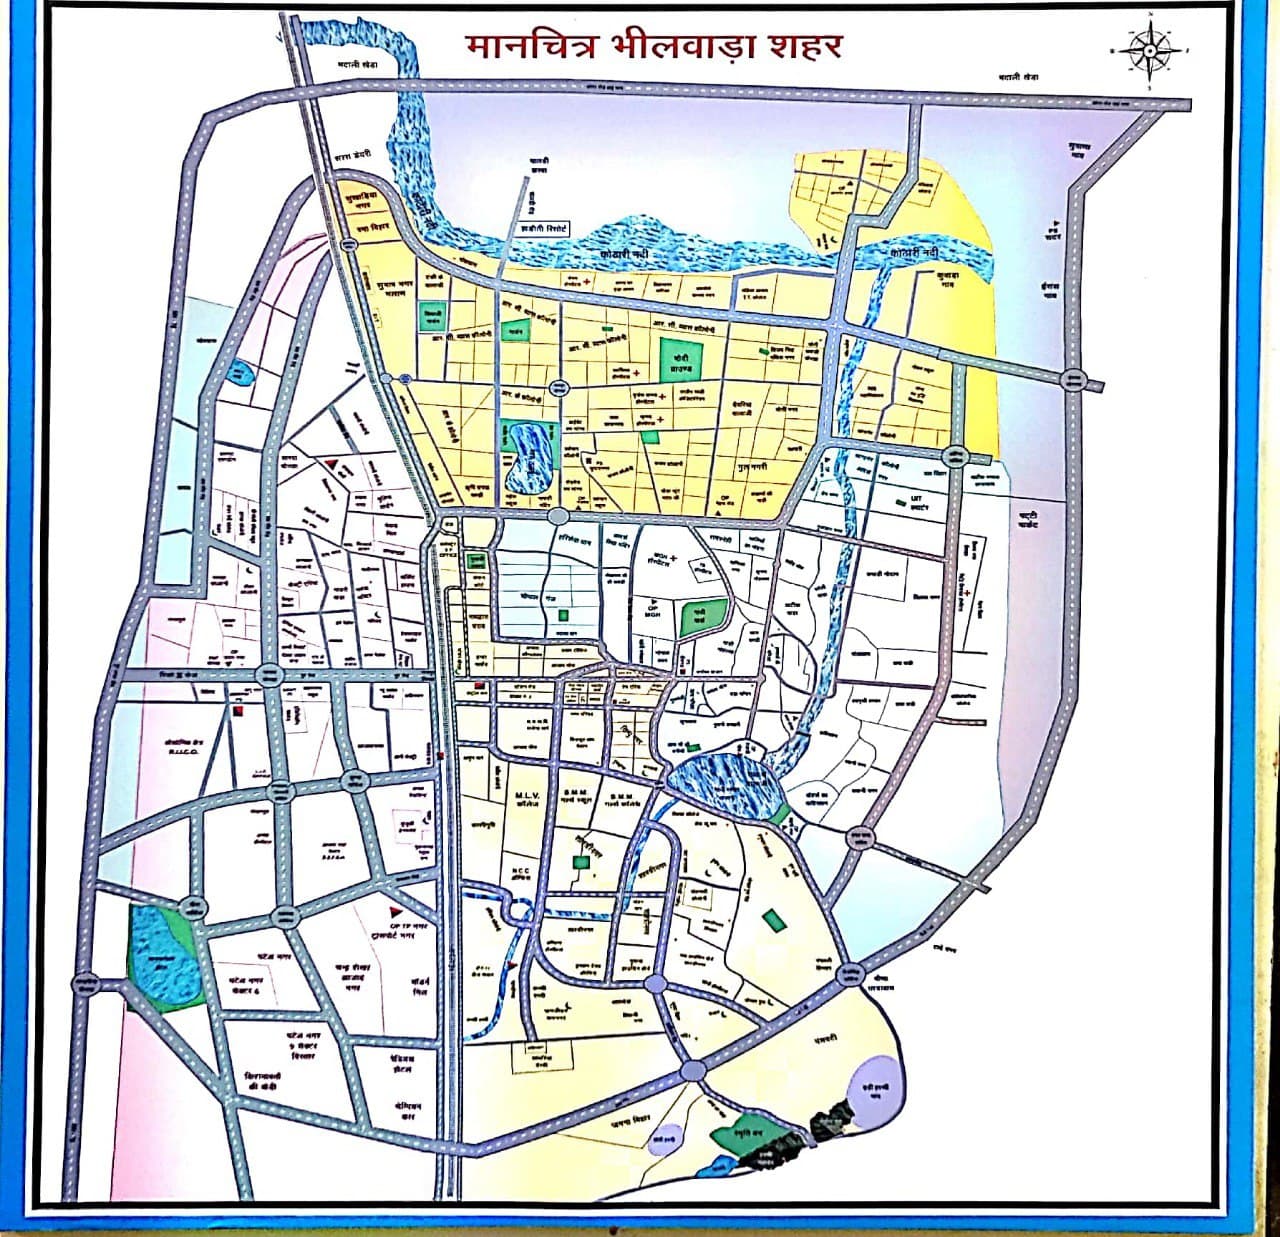 Bhilwara will become a smart city